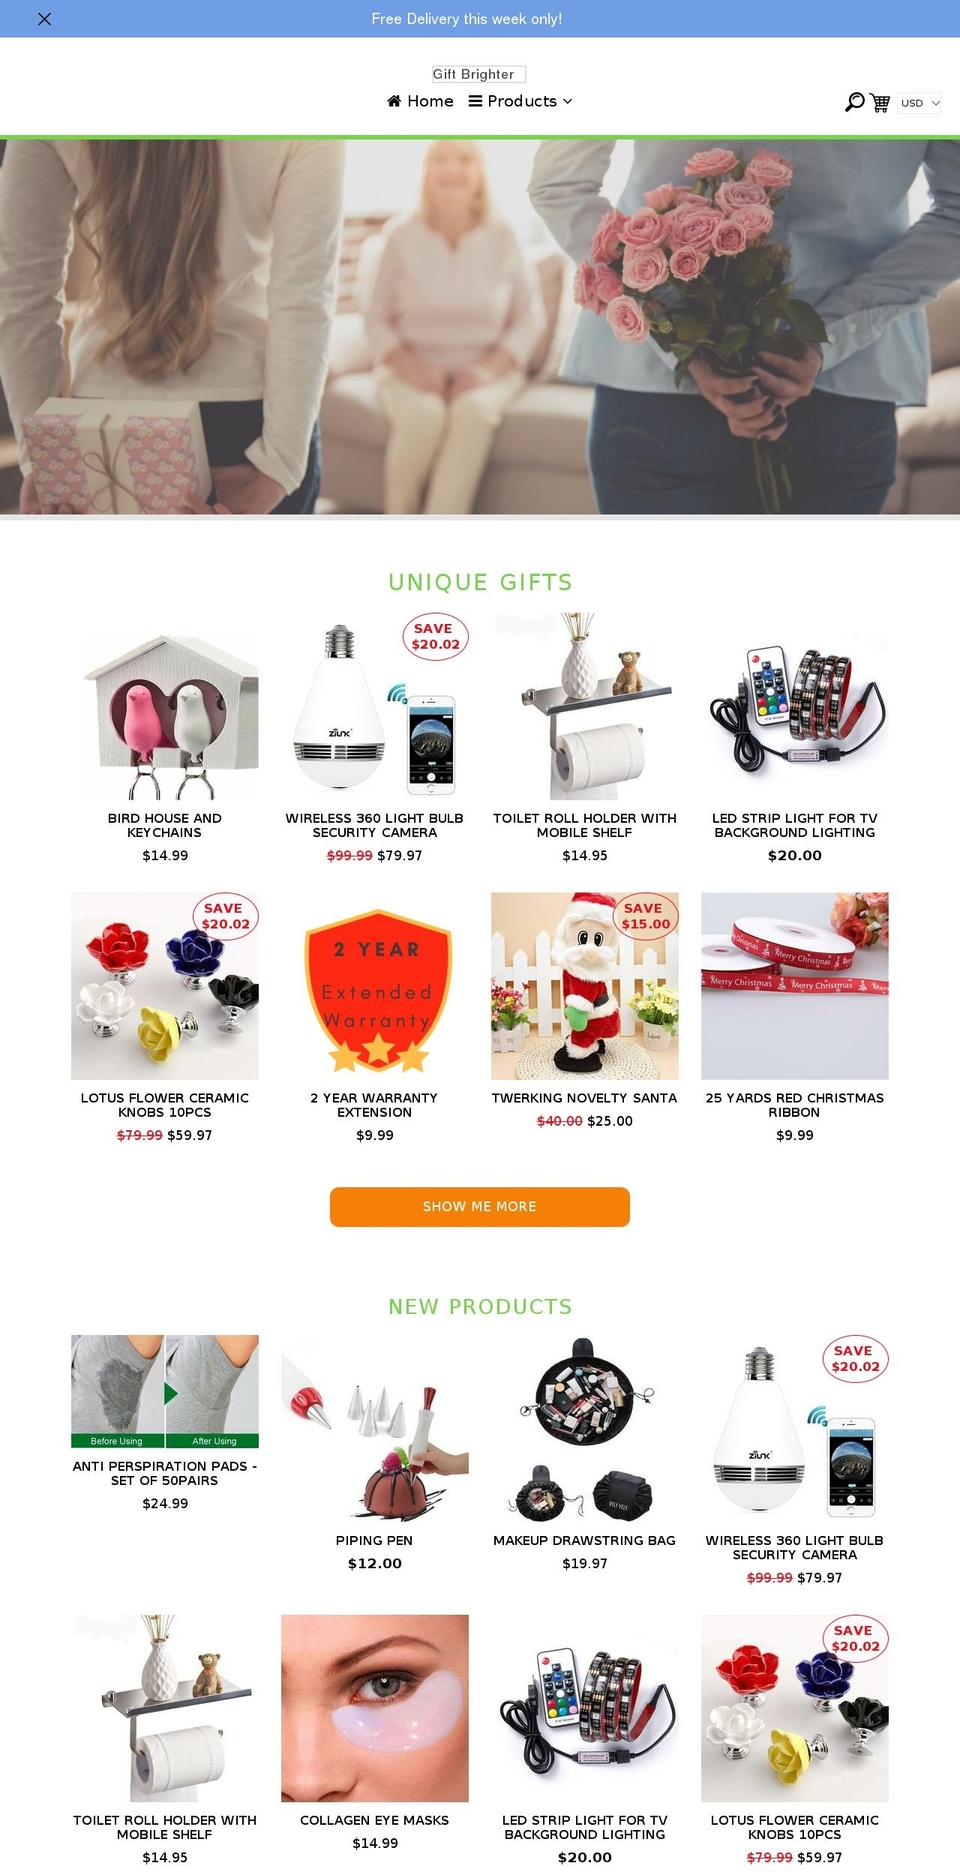 giftbrighter.com shopify website screenshot